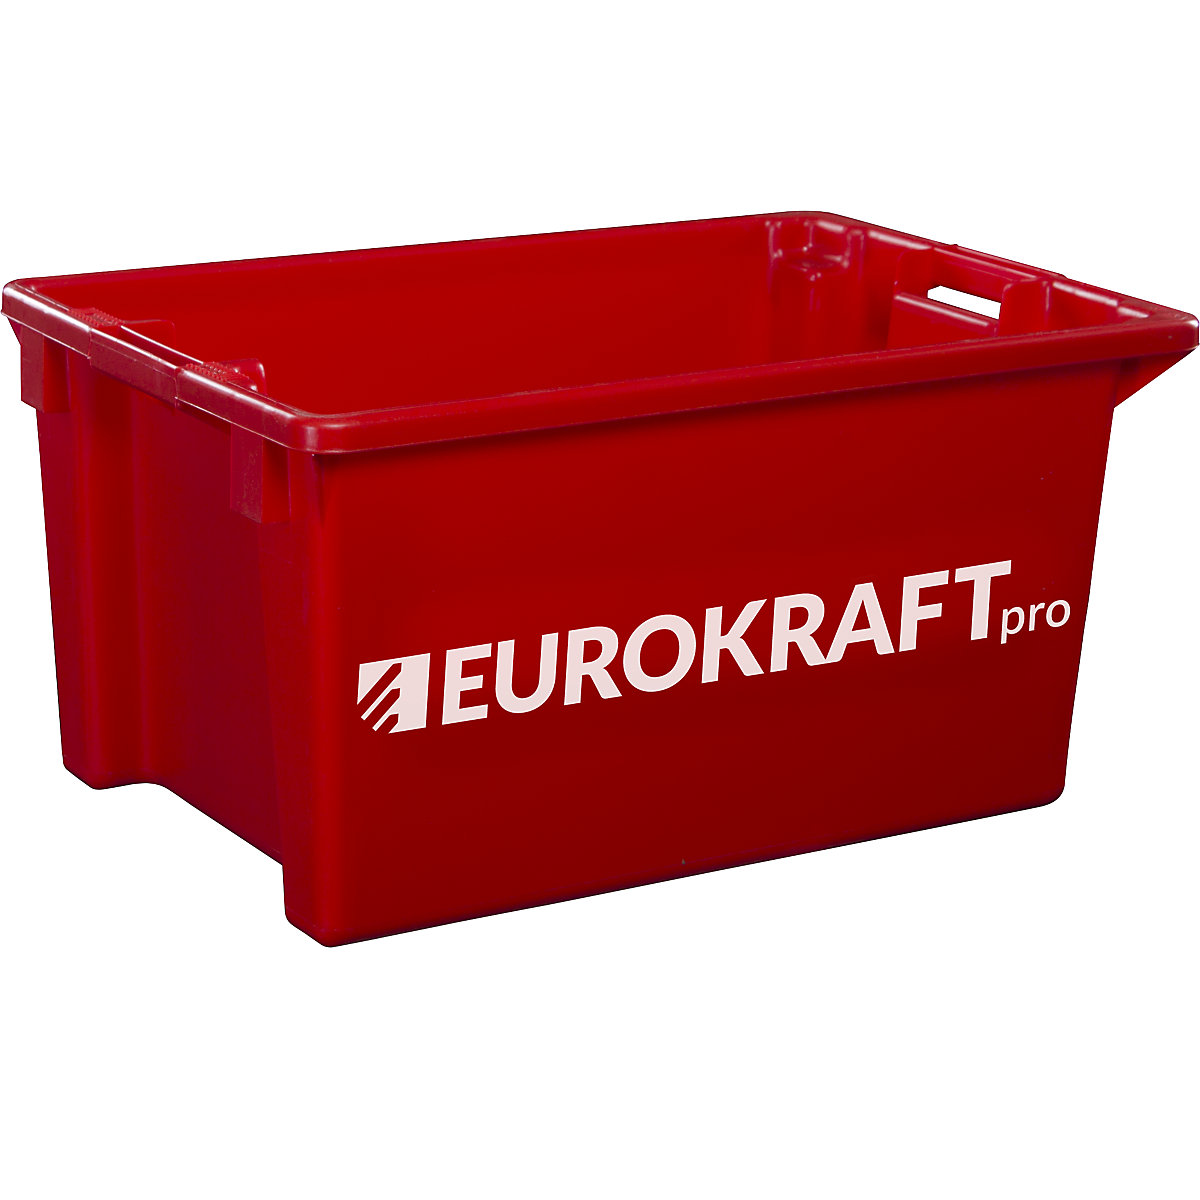 Recipiente empilhável giratório em polipropileno próprio para alimentos – eurokraft pro